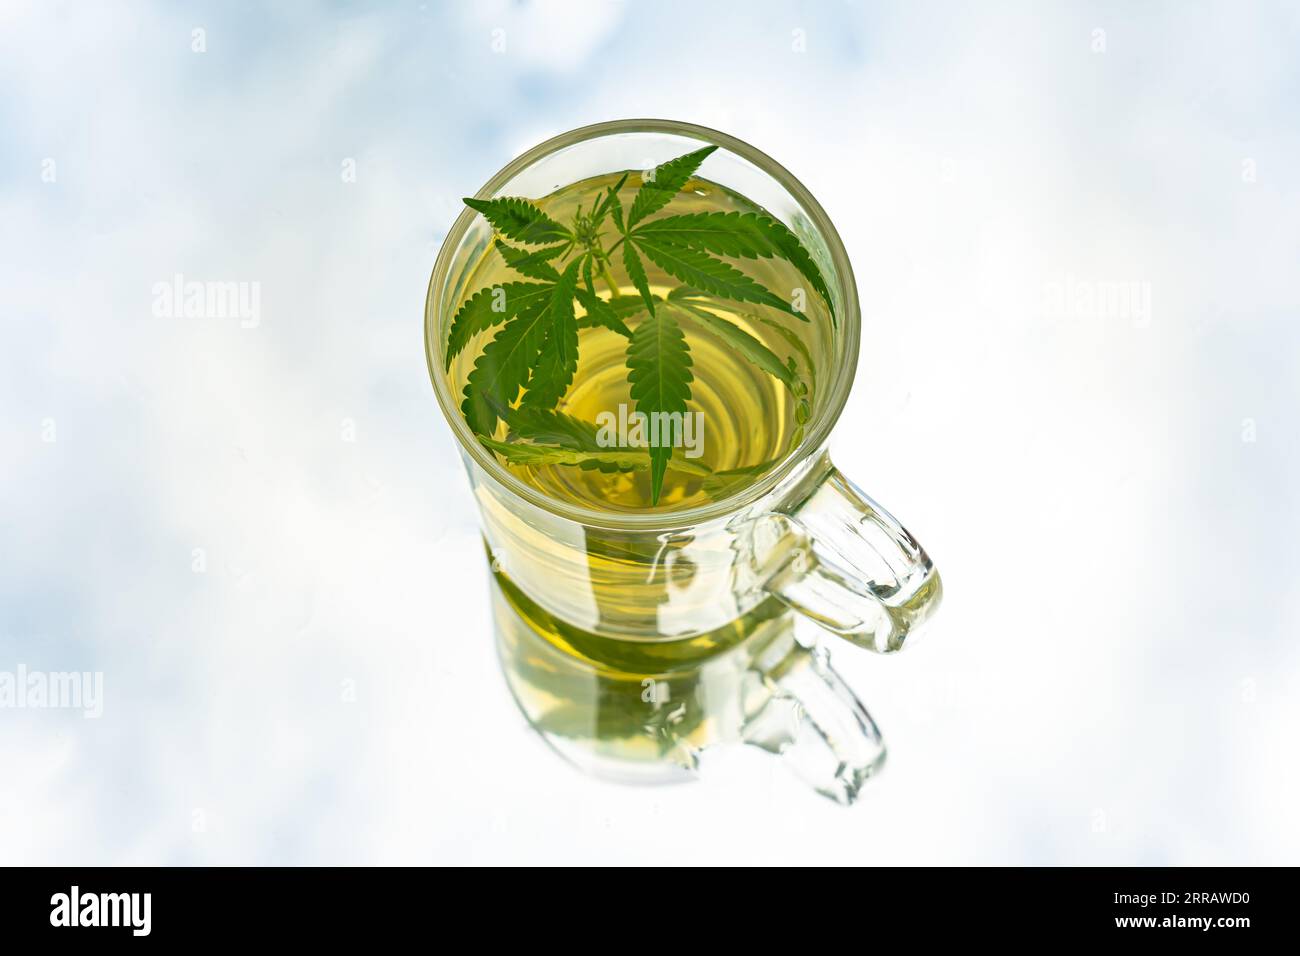 Marihuana-Tee. Hanftee. Cannabis Tee in Glas Teetasse mit einem Marihuana  Blatt und Stängel mit Blumen und Blättern Stockfotografie - Alamy